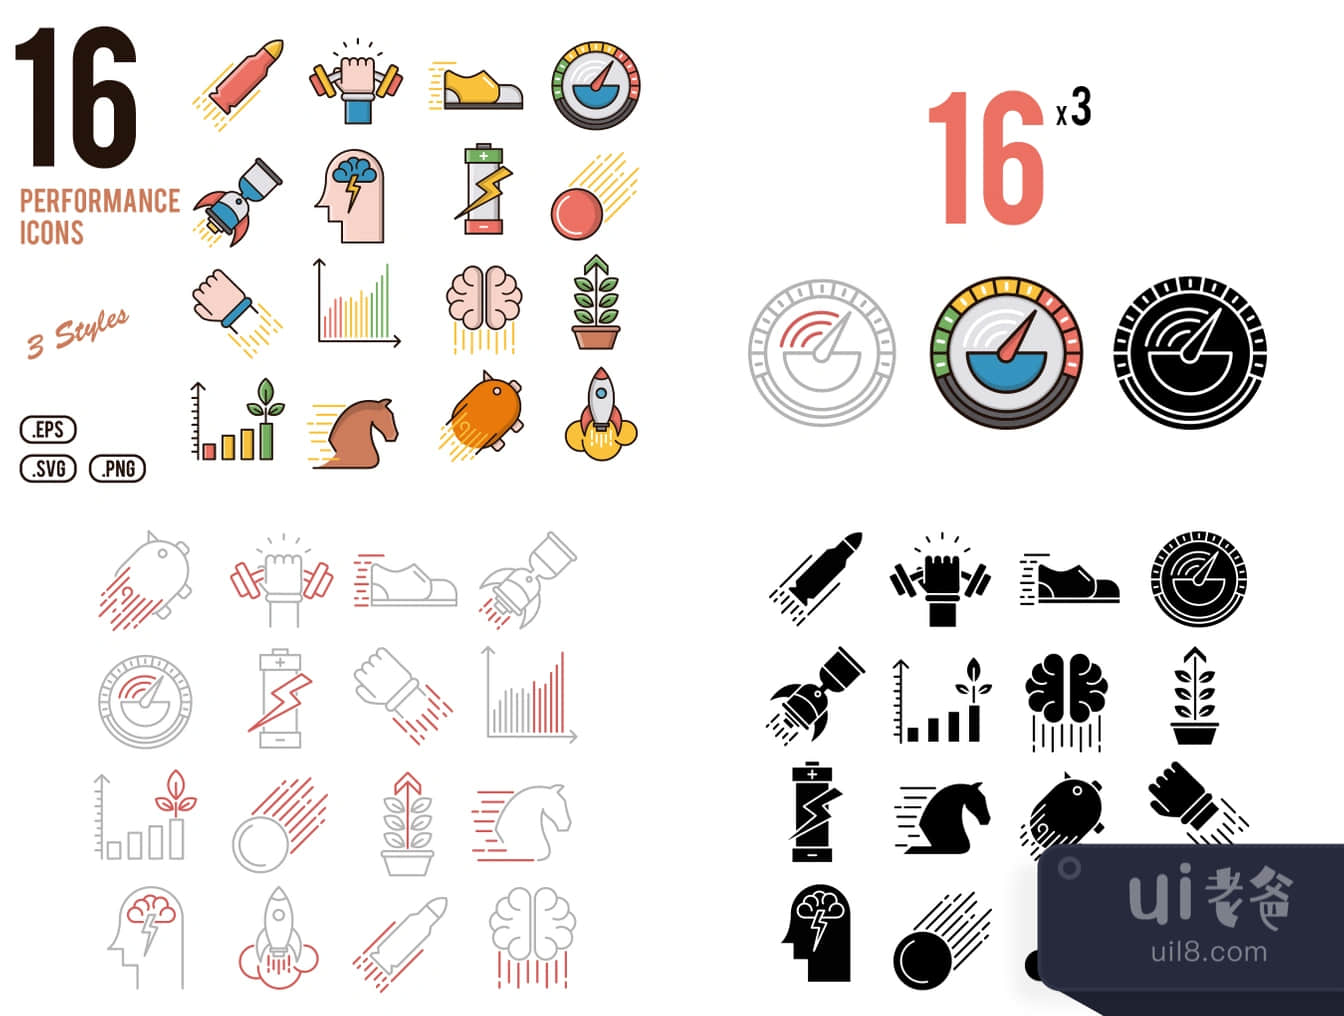 16个性能图标 (16 Performance Icons)插图